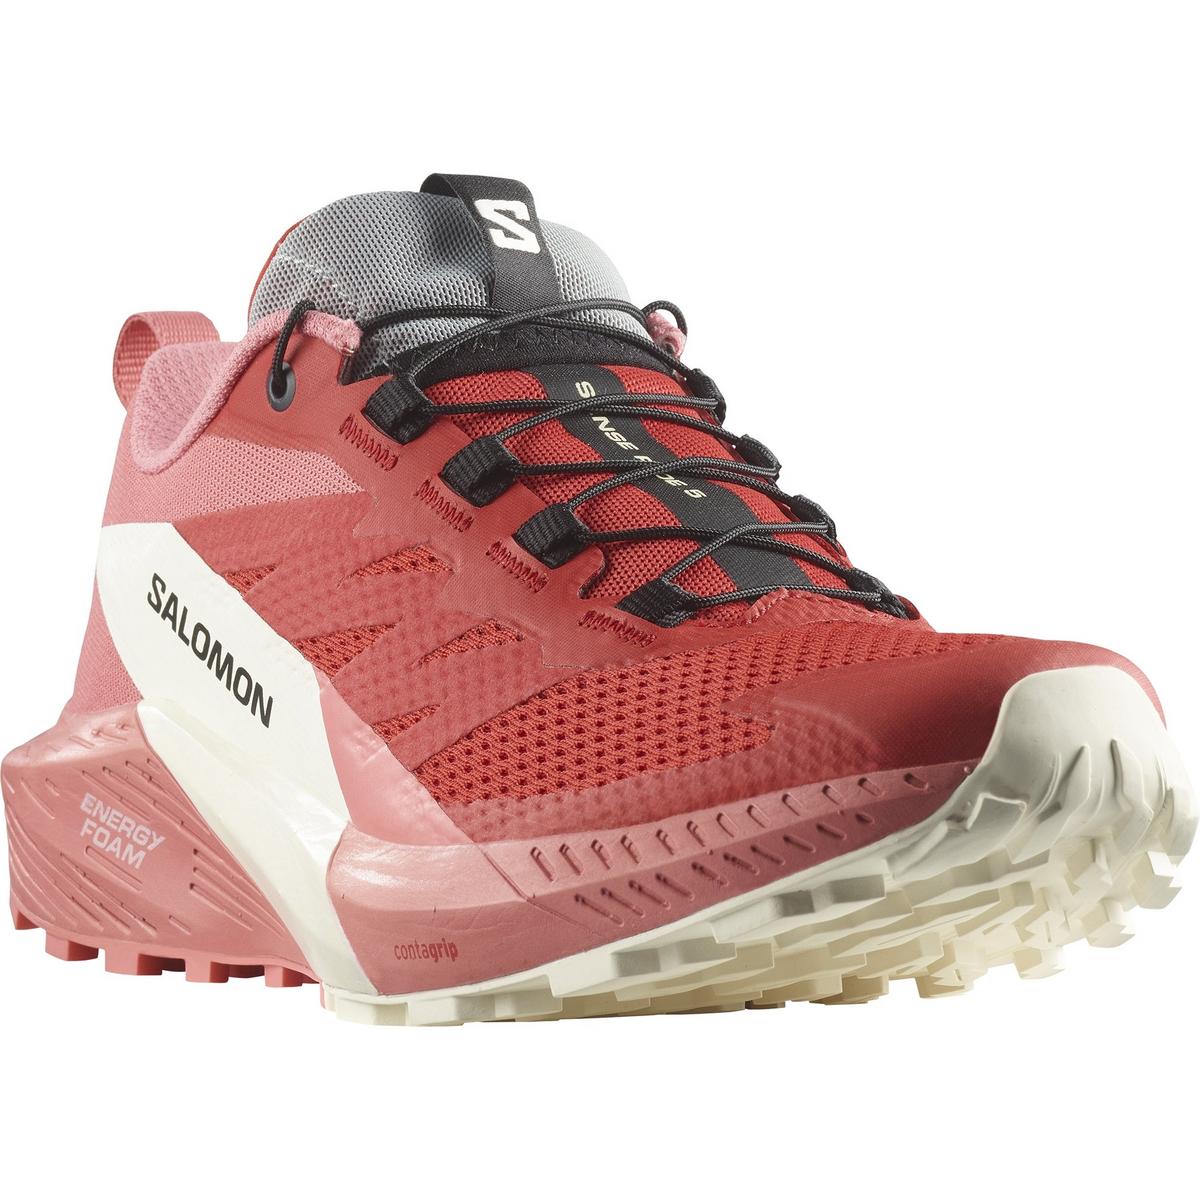 Salomon Women's Sense Ride 5 Running Shoes - Pink